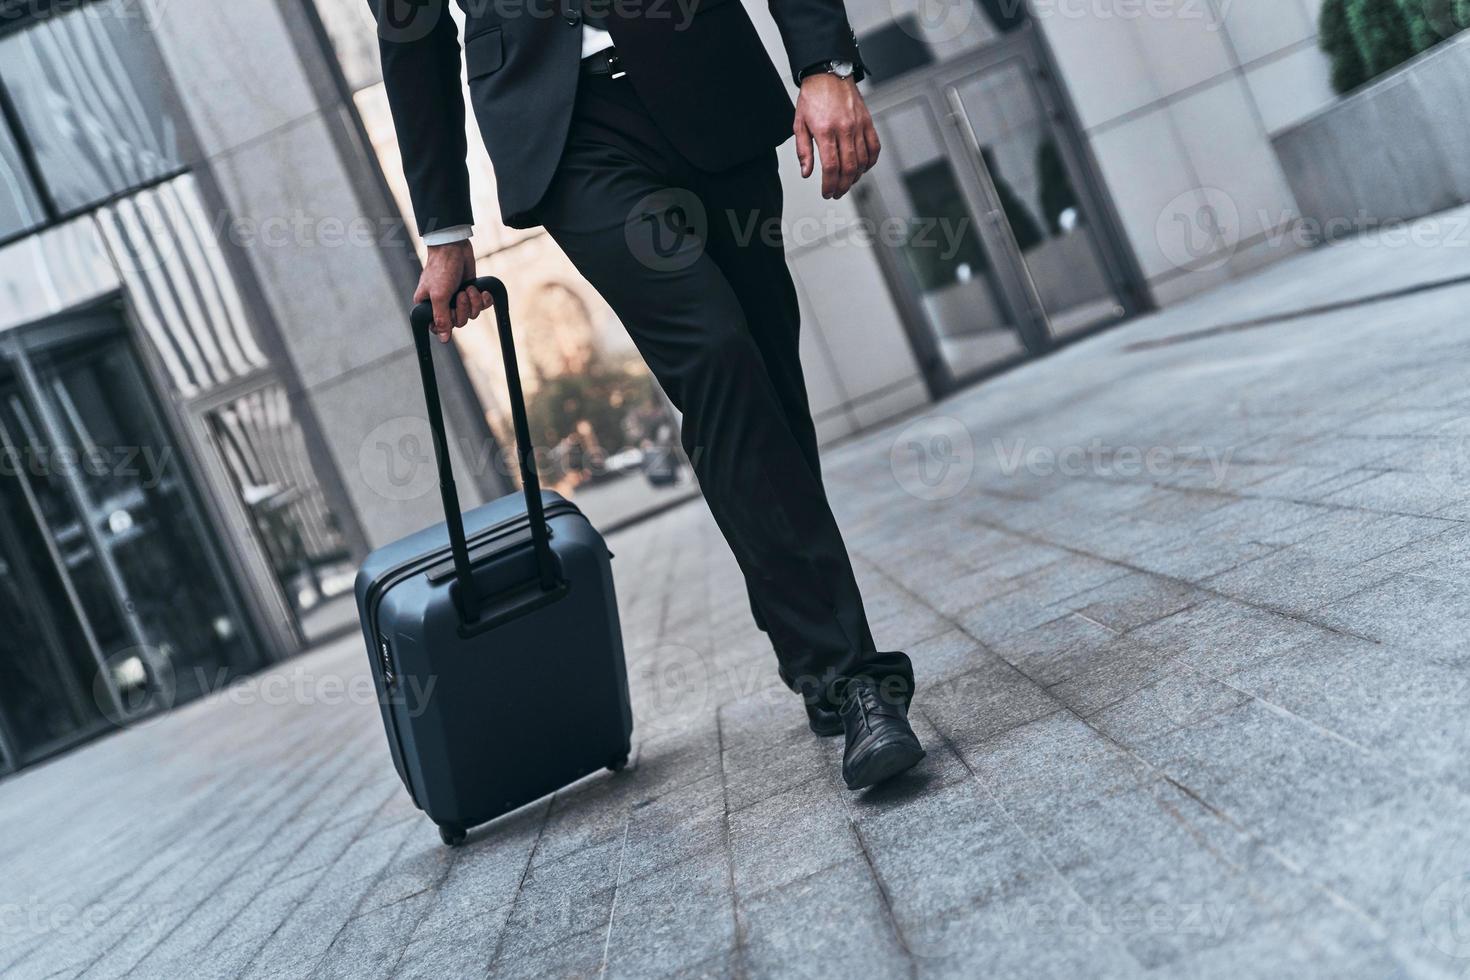 viagem de negócios. close-up do homem de terno completo puxando a bagagem enquanto caminhava ao ar livre foto